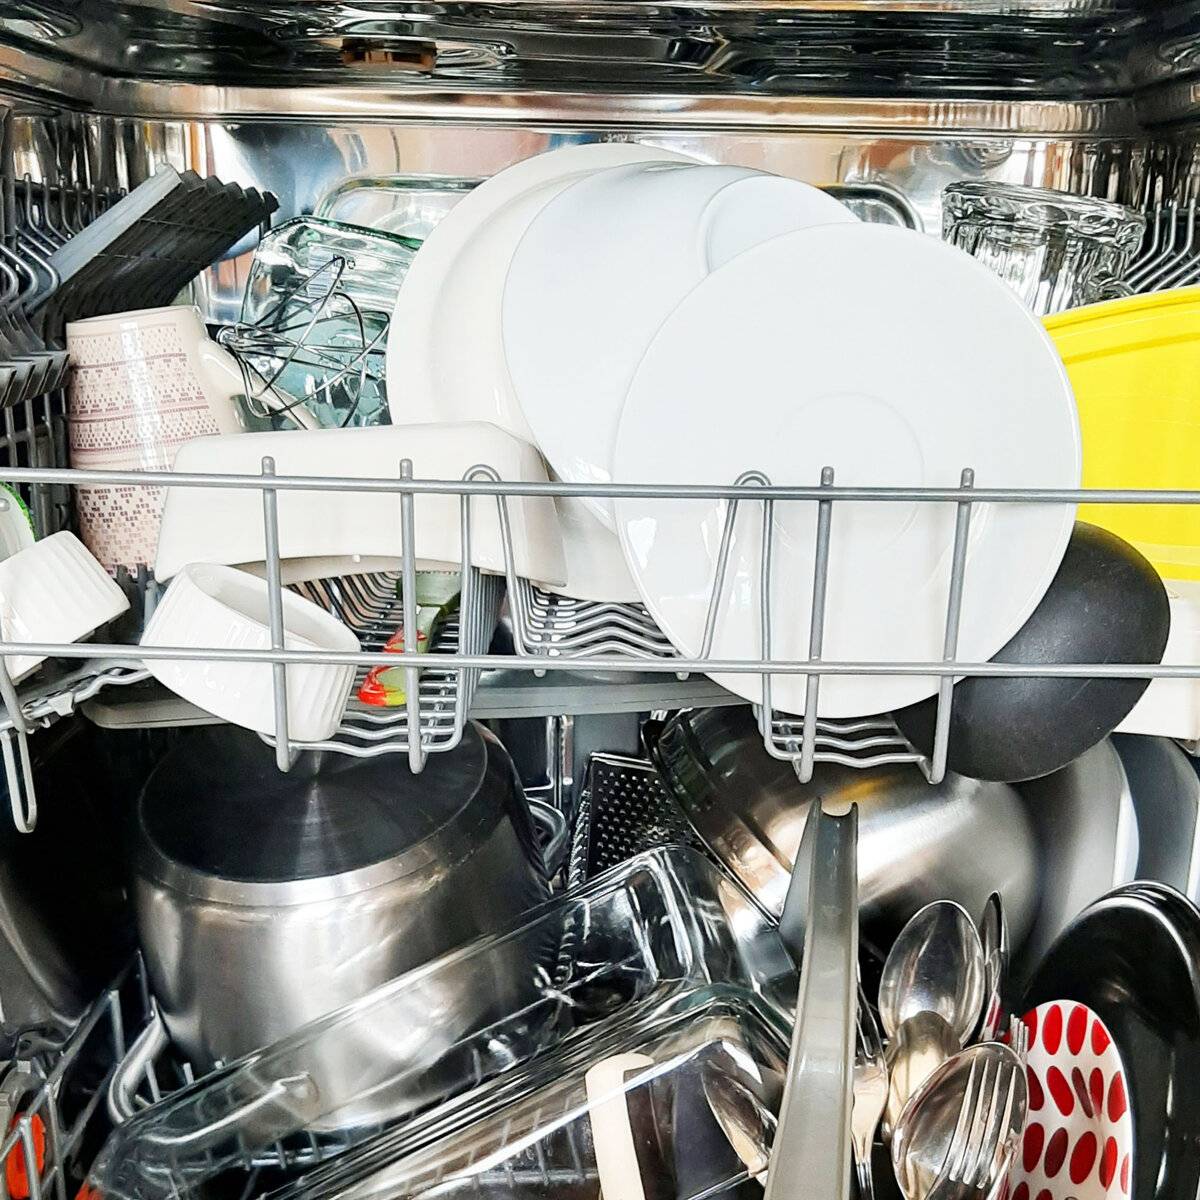 Кастрюли можно мыть в посудомойке. Посуда в посудомойке. Загрузка посуды в посудомоечную машину. Правильная загрузка посуды в посудомоечную машину. Кастрюли в посудомойке.